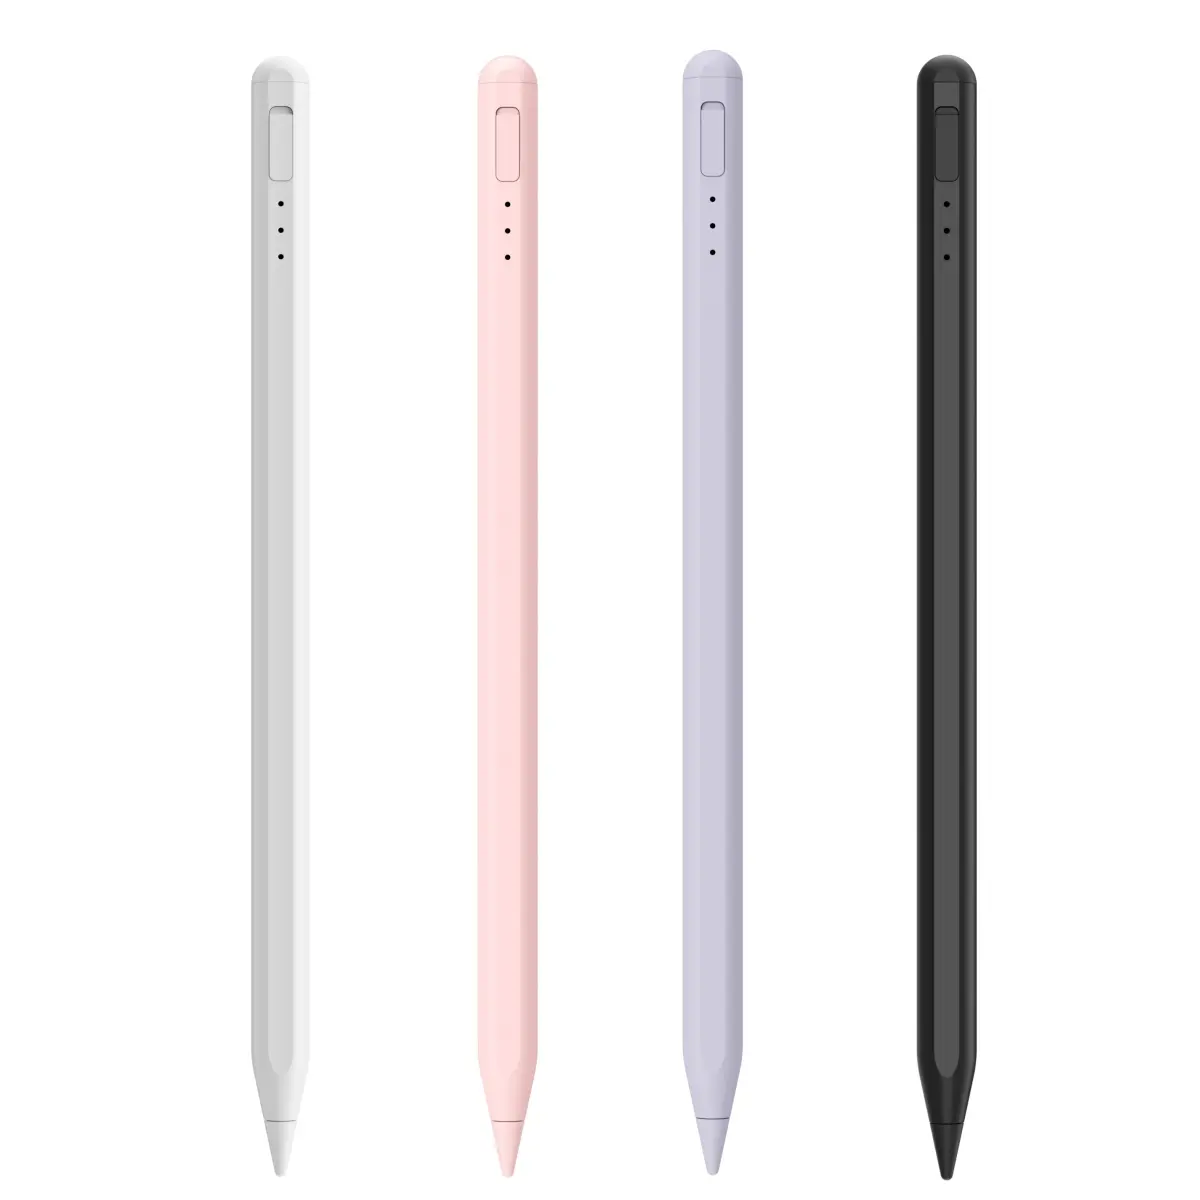 ऐप्पल आईपैड के लिए डस्ट कवर चार्जिंग एक्टिव कैपेसिटिव स्टाइलस पेन के साथ निर्माता पाम रिजेक्शन सेंसिटिव पेंसिल